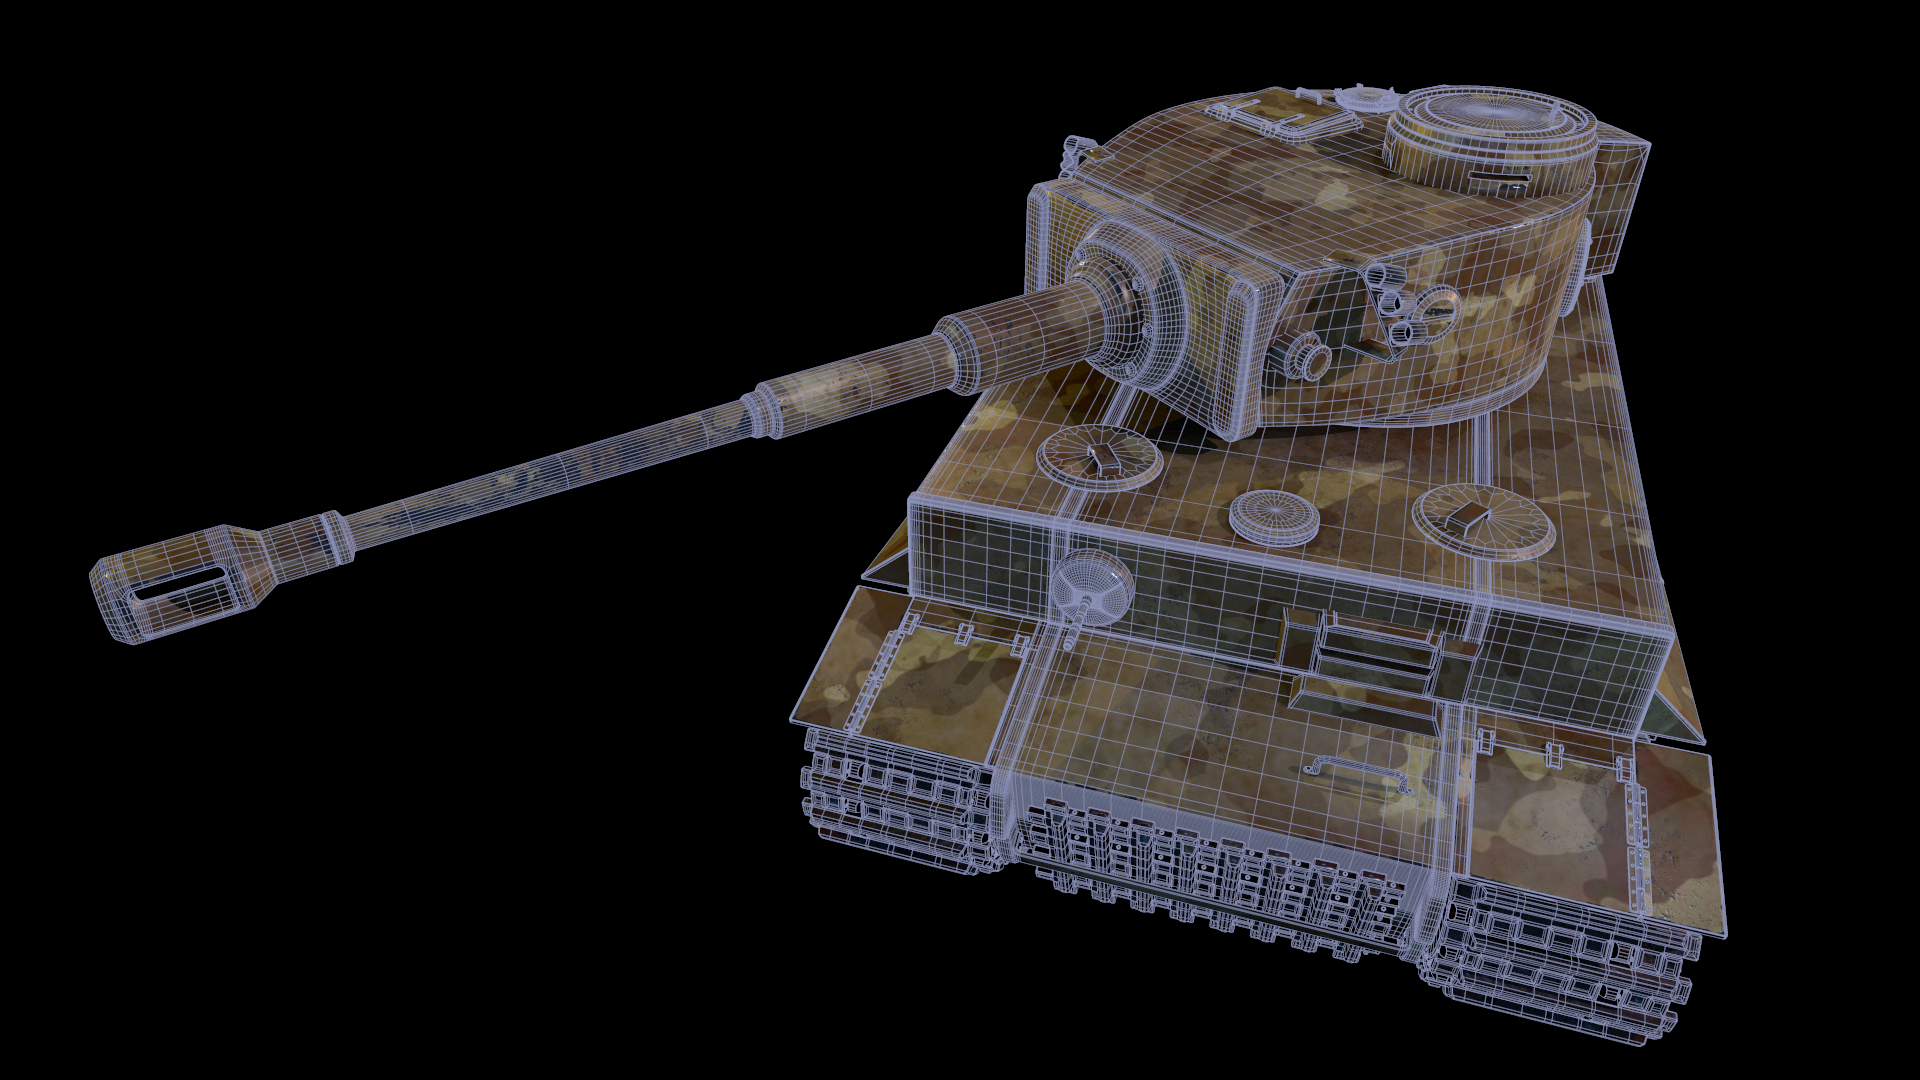 Tank Kaplan 1 in 3d max Other resim